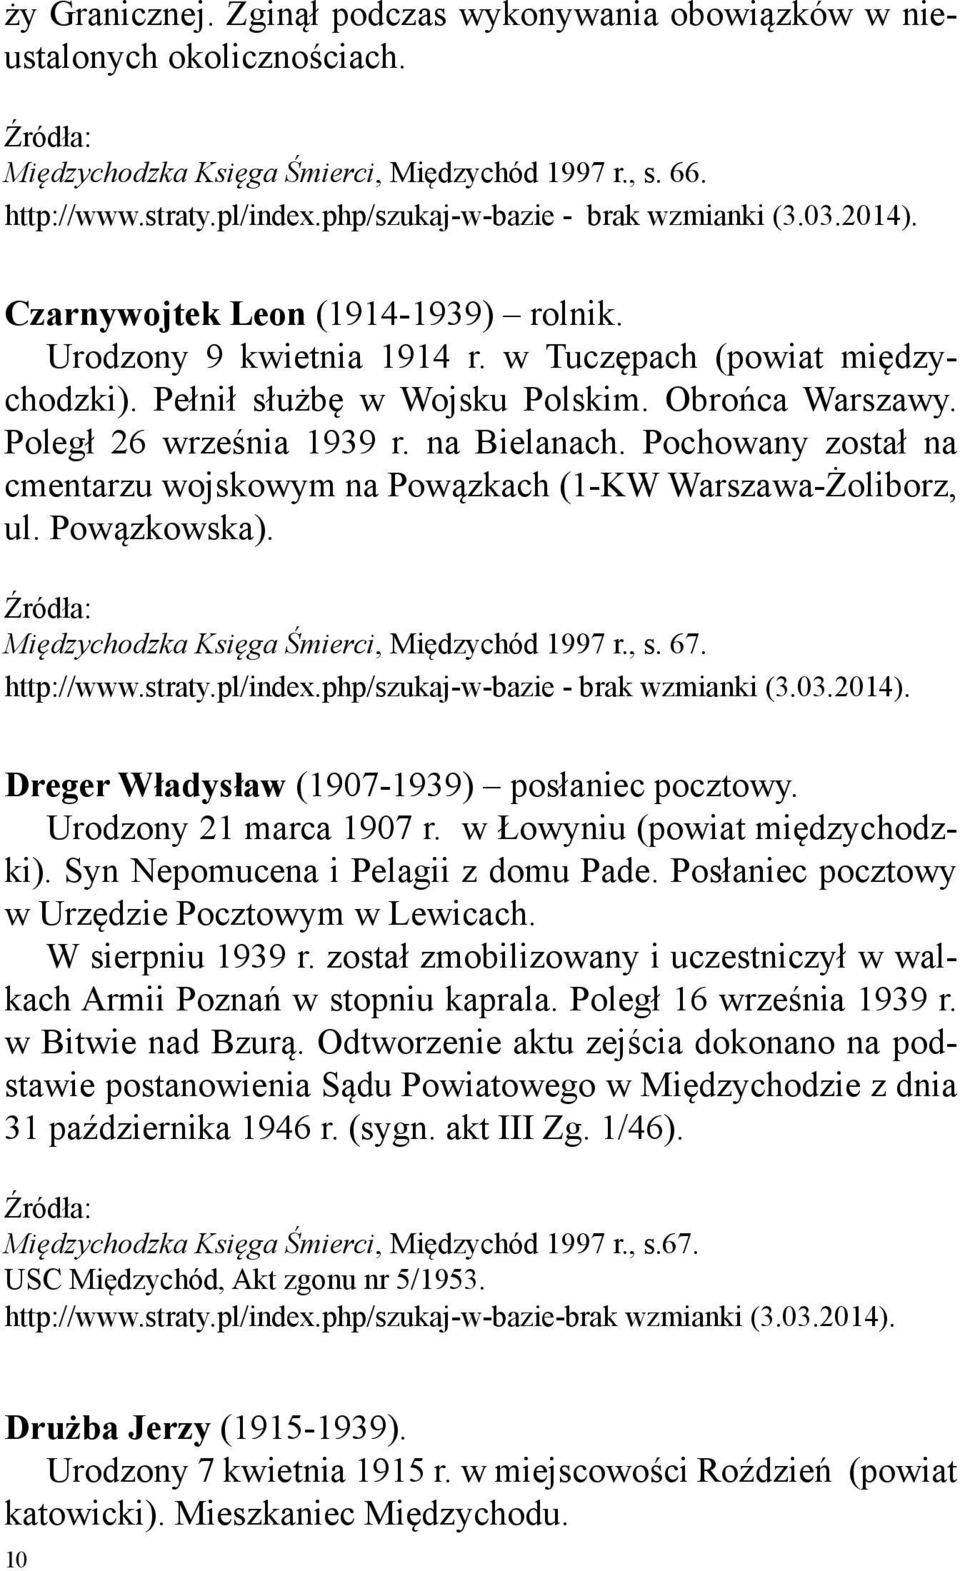 Poległ 26 września 1939 r. na Bielanach. Pochowany został na cmentarzu wojskowym na Powązkach (1-KW Warszawa-Żoliborz, ul. Powązkowska). Międzychodzka Księga Śmierci, Międzychód 1997 r., s. 67.